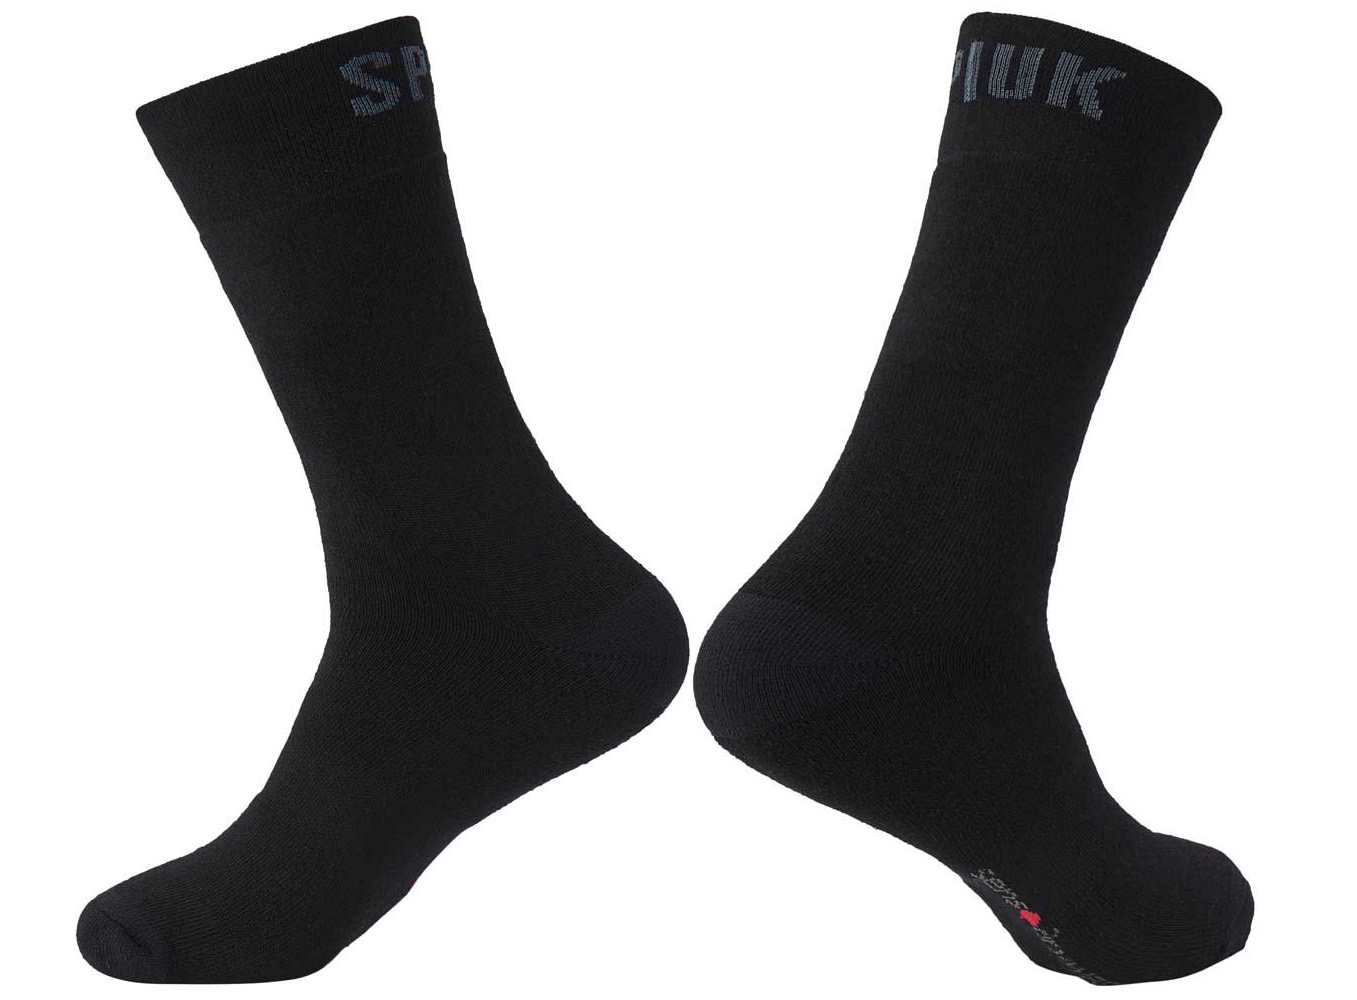 Шкарпетки Spiuk Anatomic winter чорні р 40-43 (2 пари в упаковці)